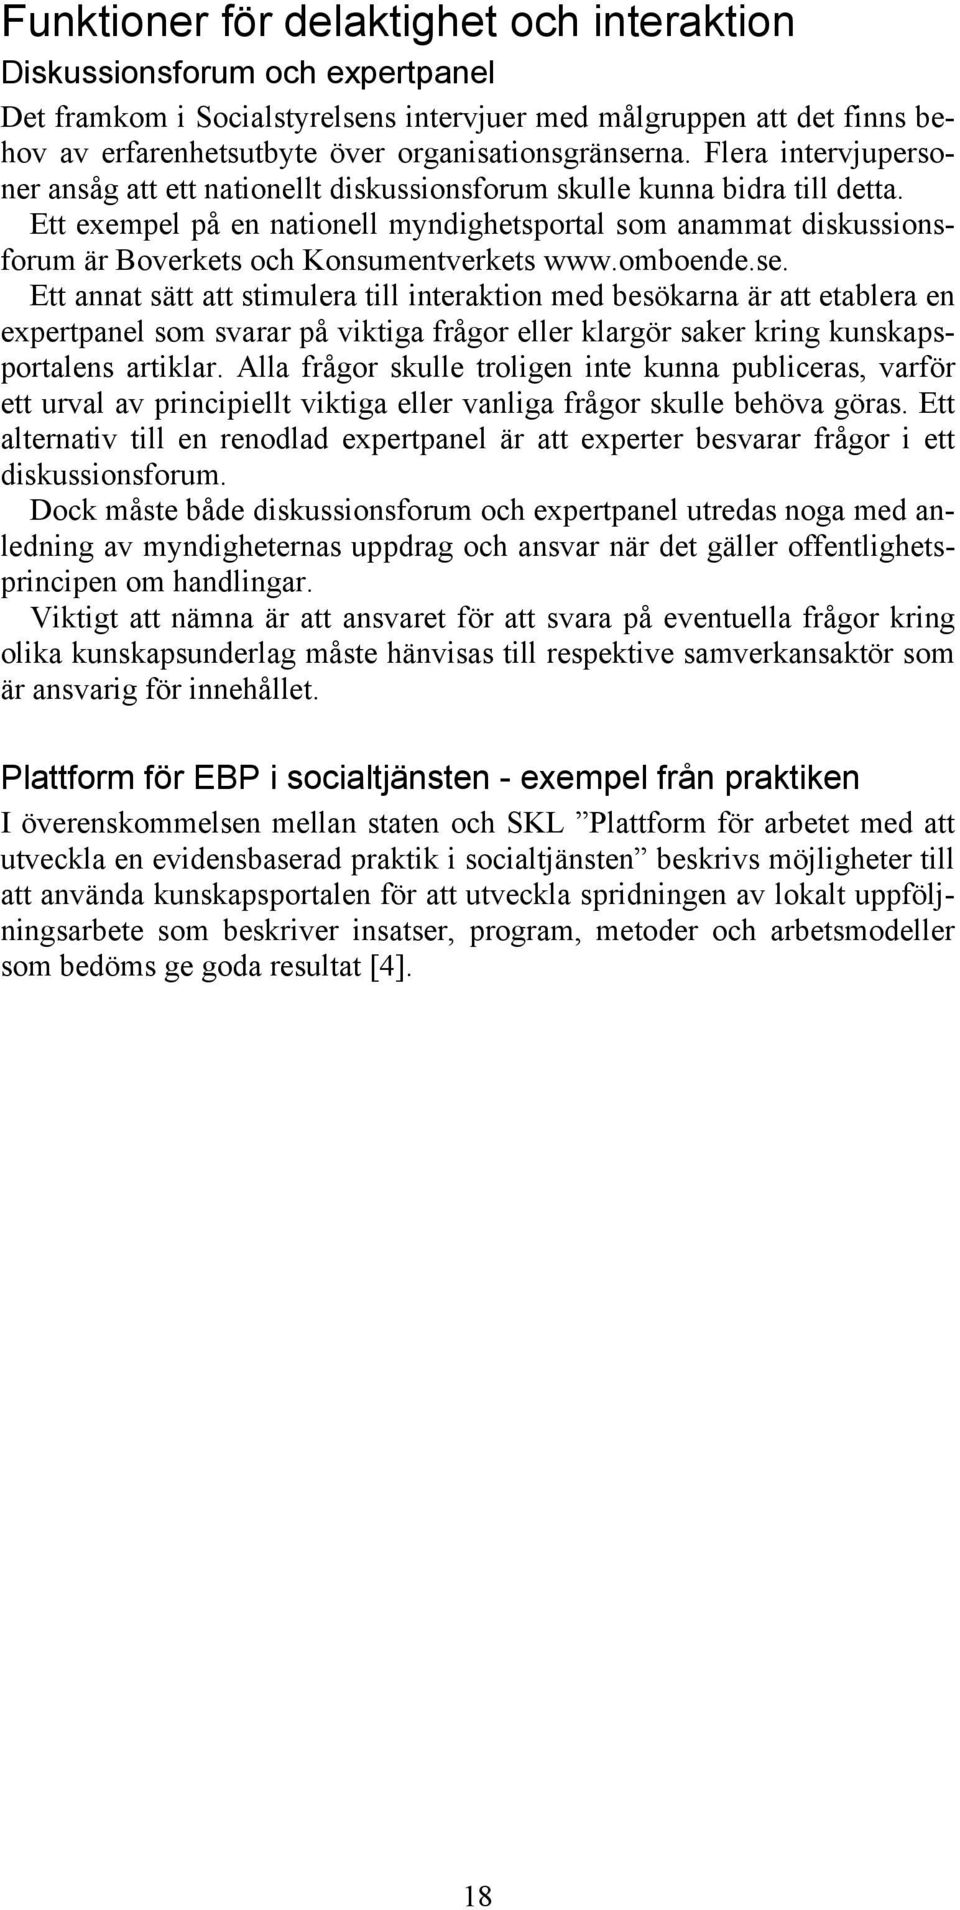 Ett exempel på en nationell myndighetsportal som anammat diskussionsforum är Boverkets och Konsumentverkets www.omboende.se.